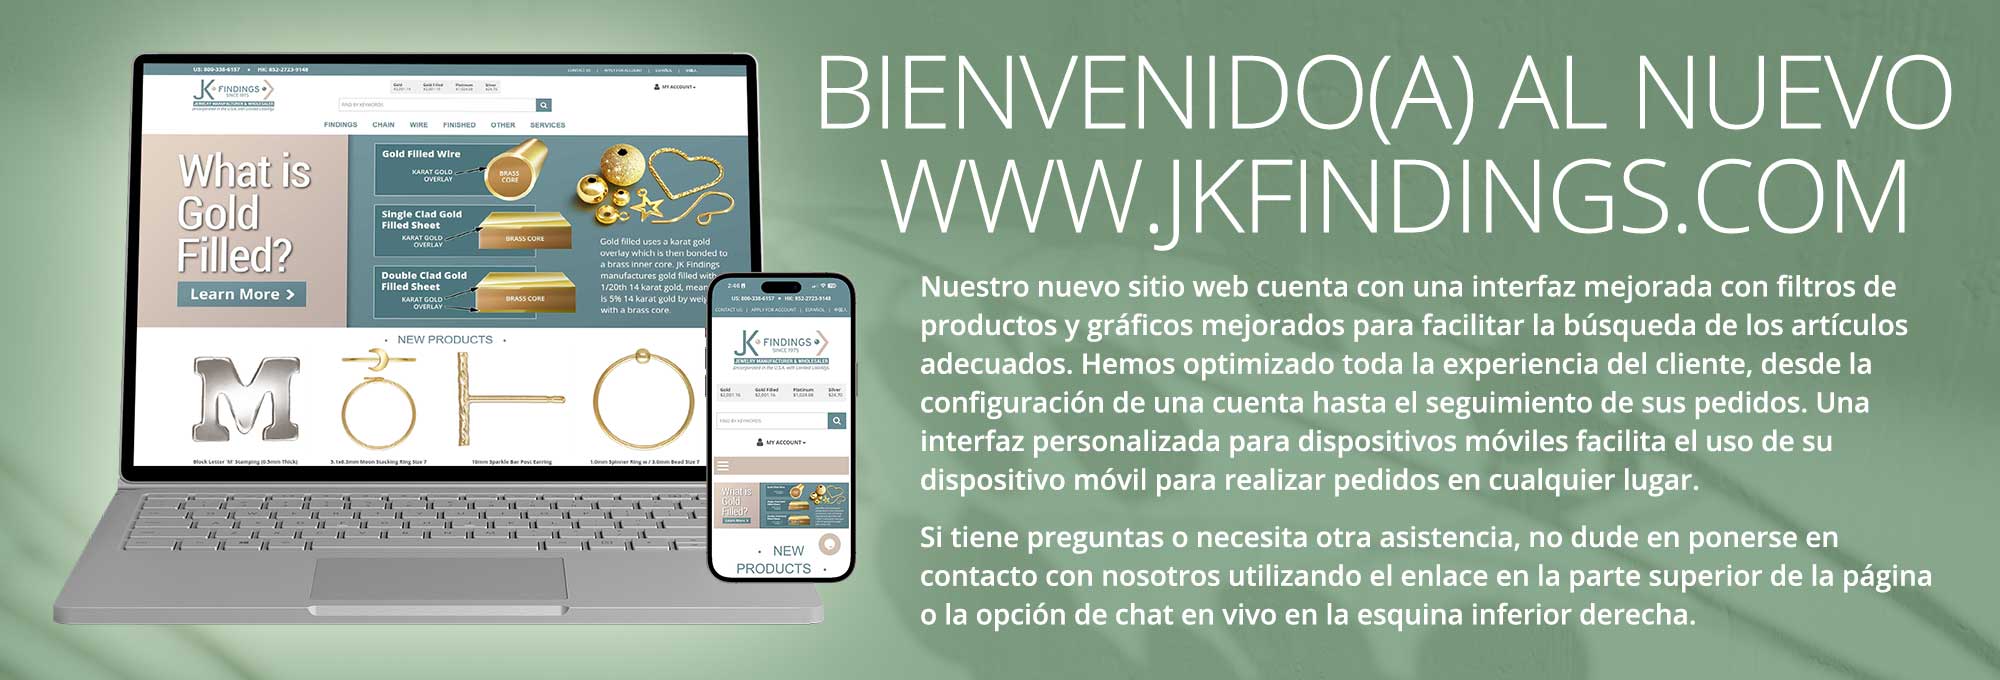 Bienvenido(a) al nuevo www.jkfindings.com